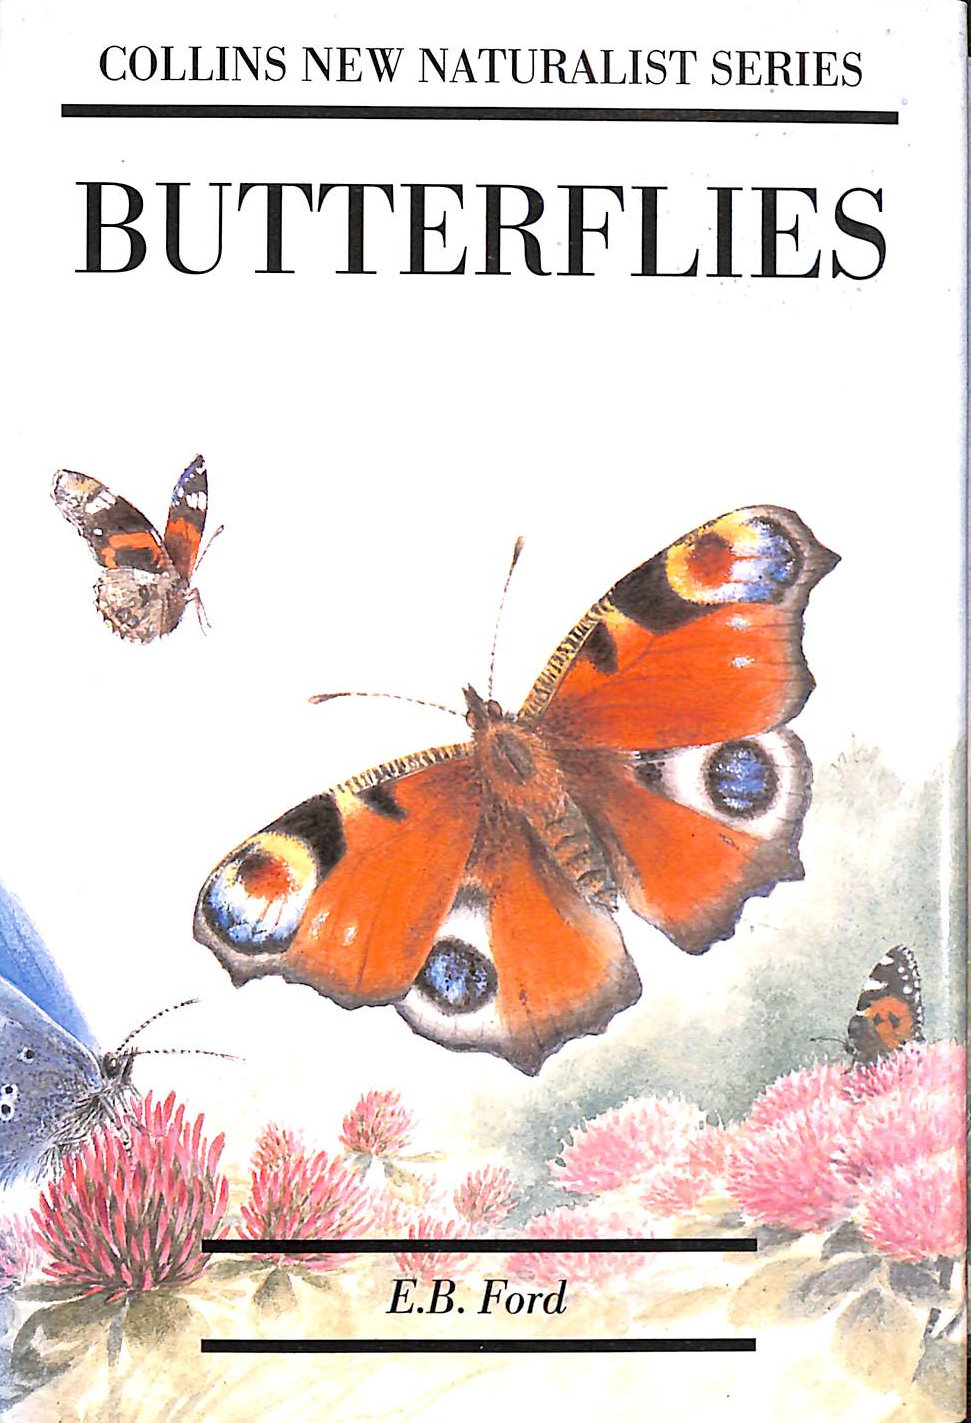 EDMUND BRISCO FORD - Butterflies (Collins New Naturalist Series)